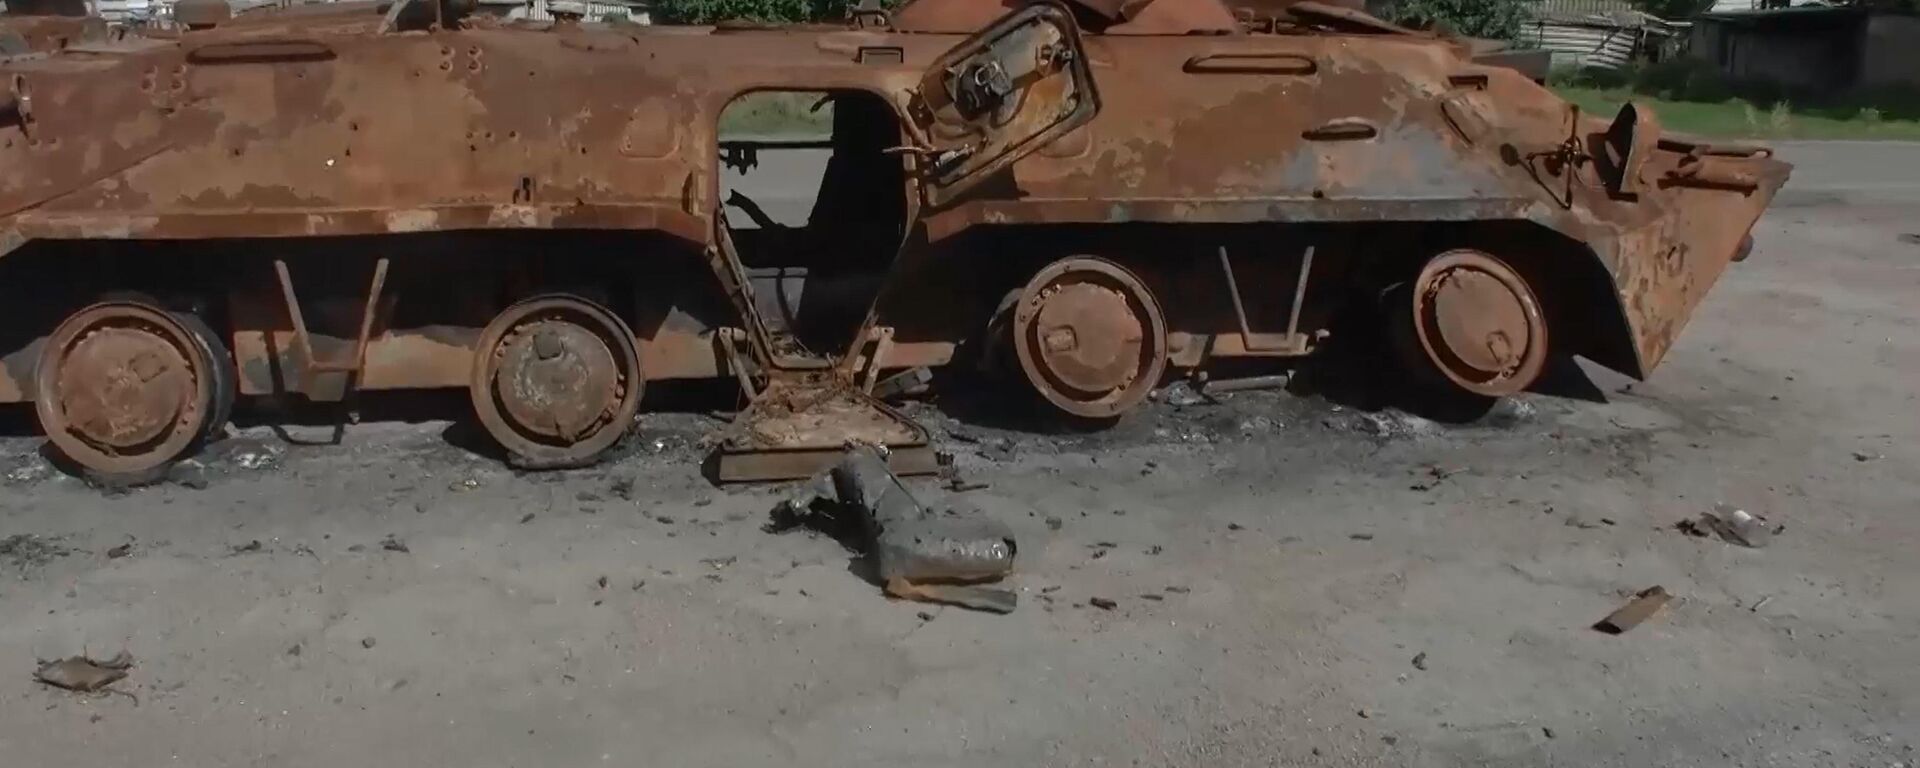 Un vehículo de transporte blindado ucraniano destruido en el frente de Nikolaev - Sputnik Mundo, 1920, 12.09.2022